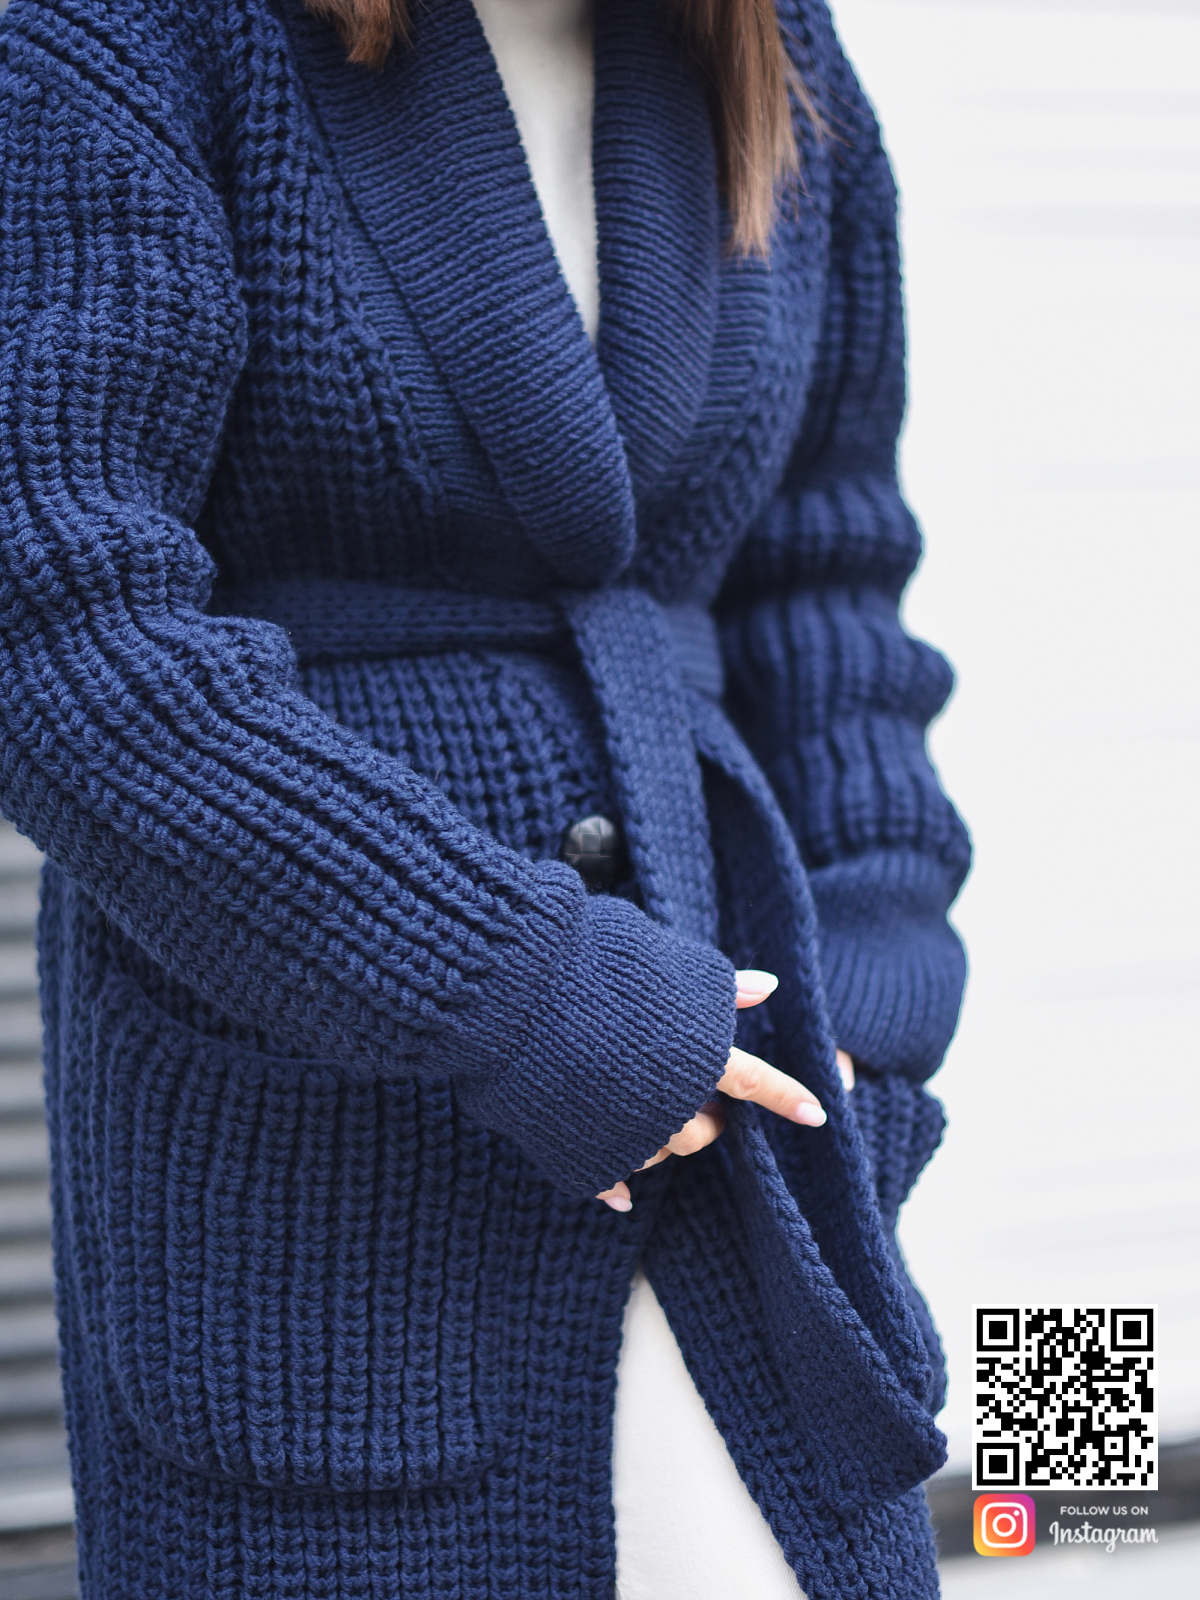 На пятой фотографии кардиган синий женский крупным планом в интернет-магазине вязаной одежды Shapar.